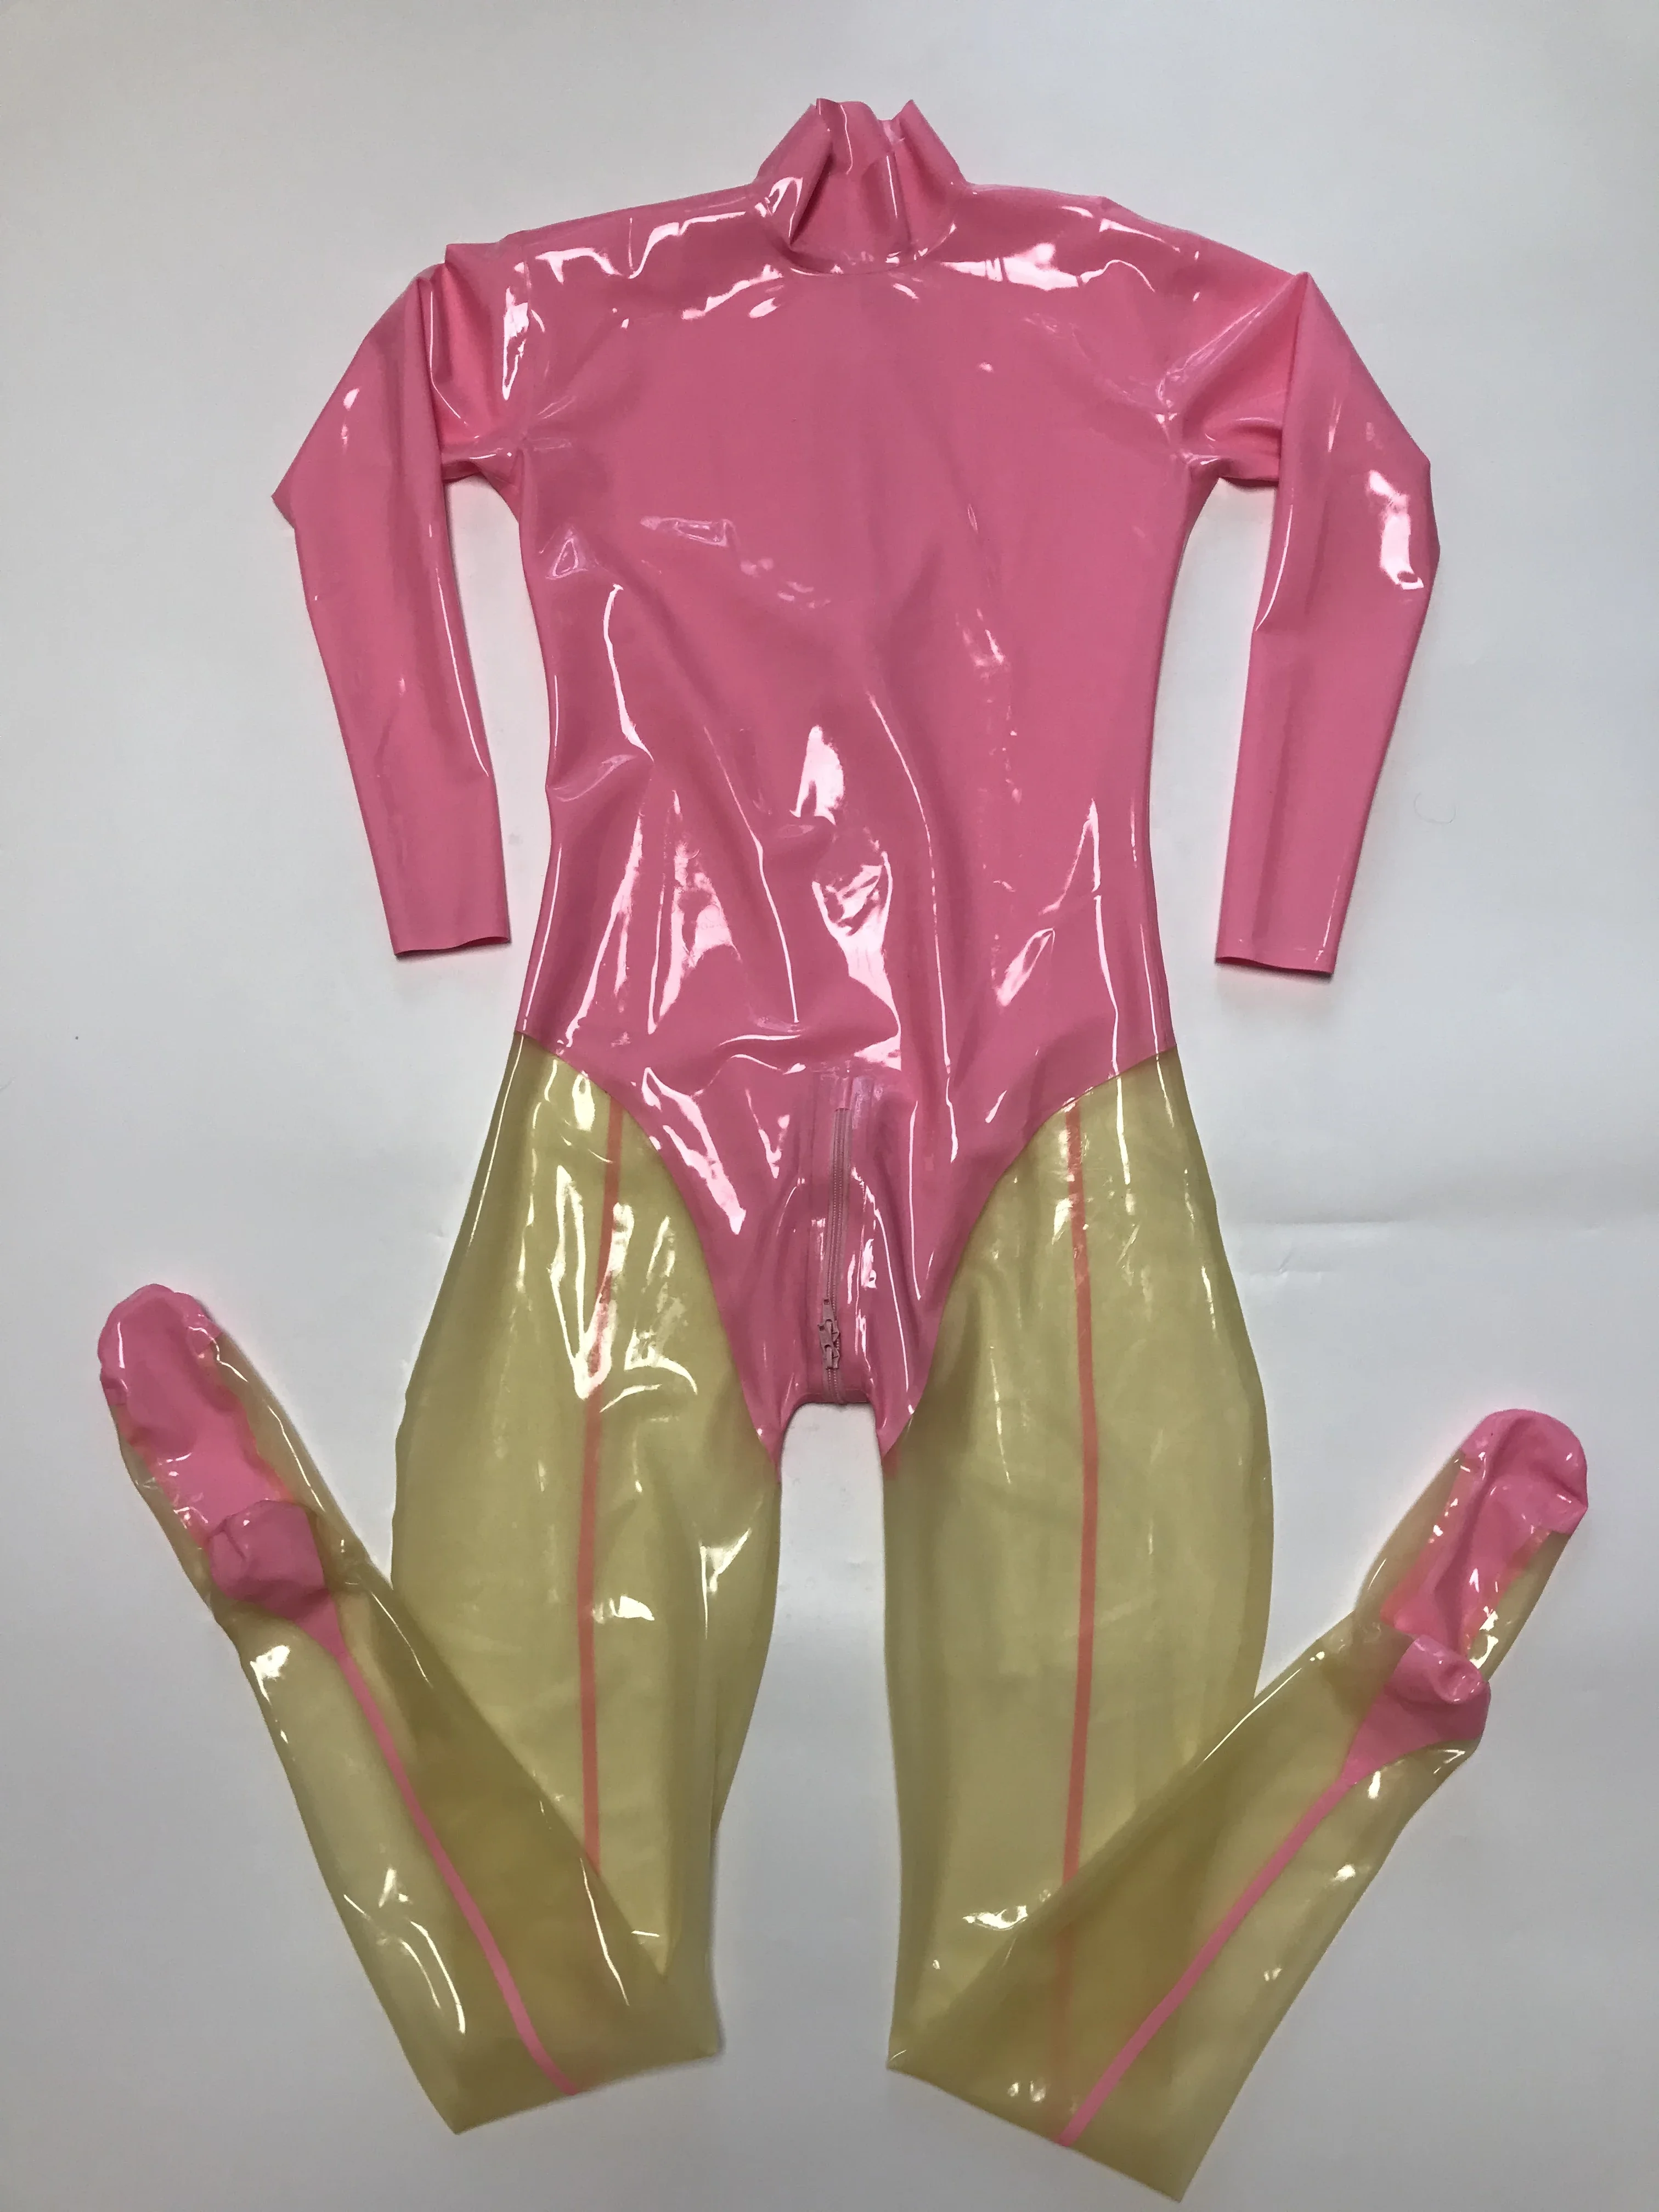 Розовый и прозрачный латексный облегающий комбинезон, резиновое боди, комбинезон с застежкой сзади на молнию в промежности Изображение 1